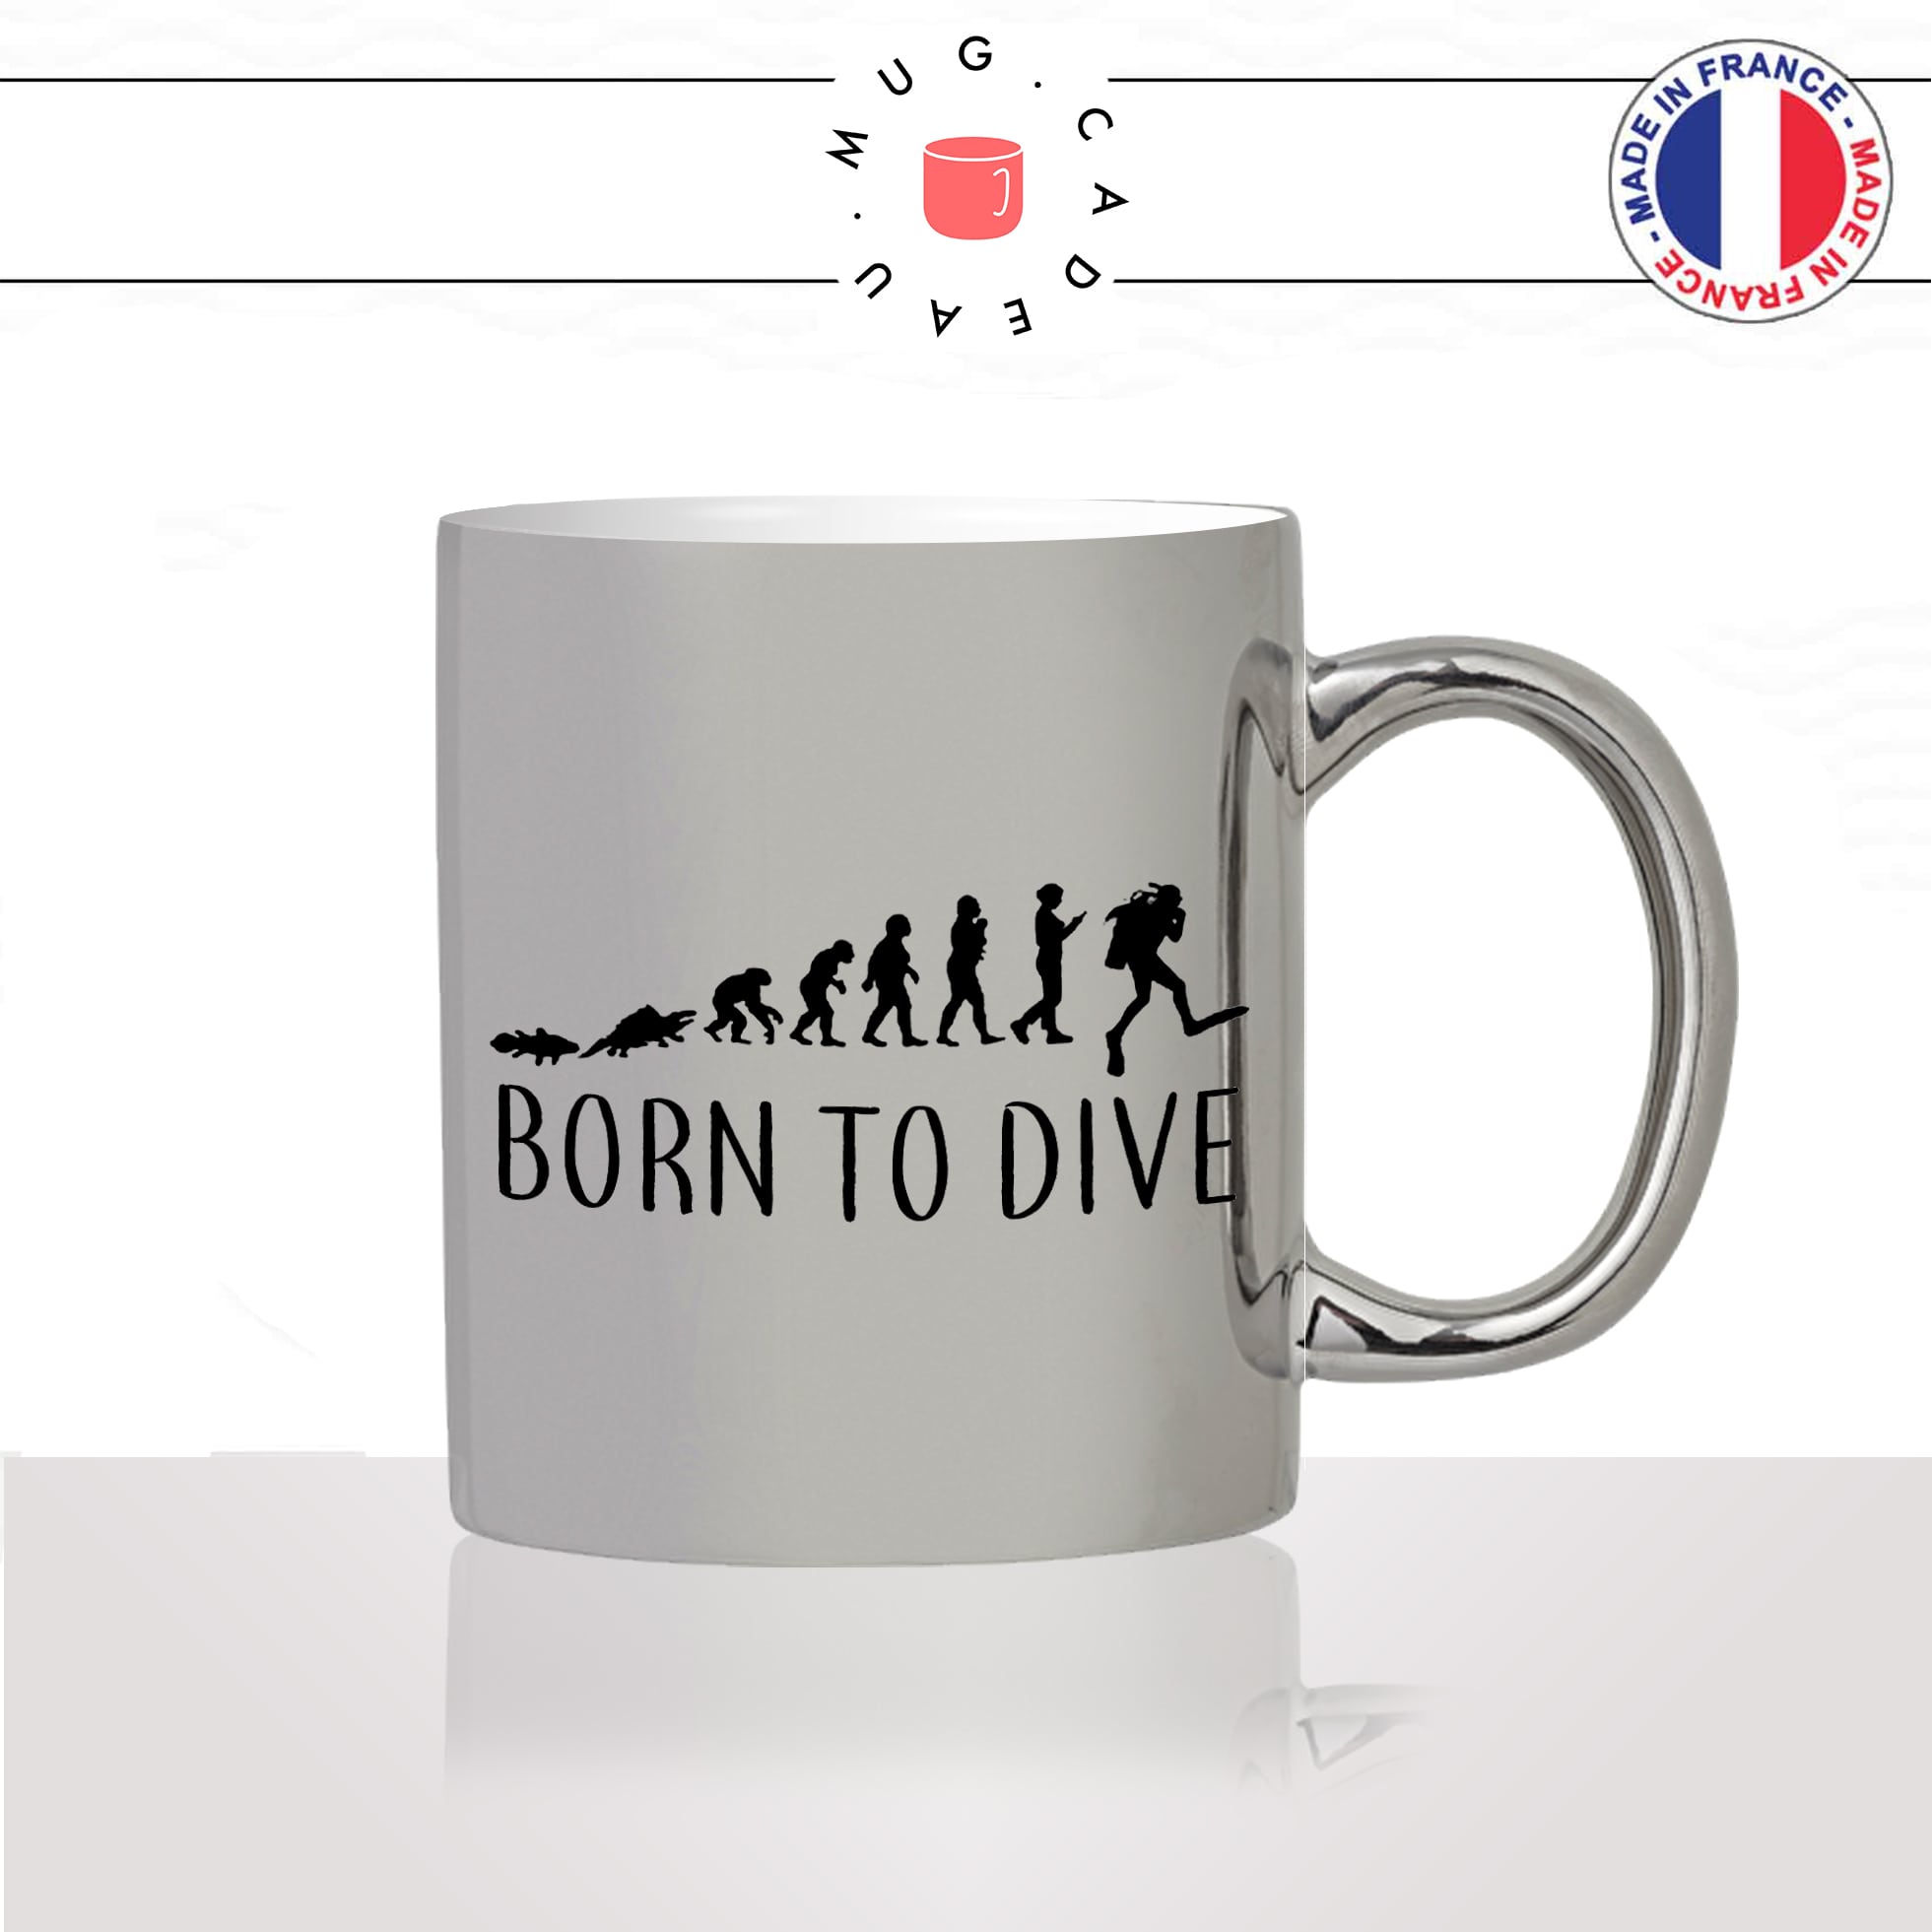 mug-tasse-argent-argenté-silver-born-to-dive-evolution-humaine-poisson-plongée-masque-tuba-plongeur-humour-idée-cadeau-fun-cool-café-thé2-min